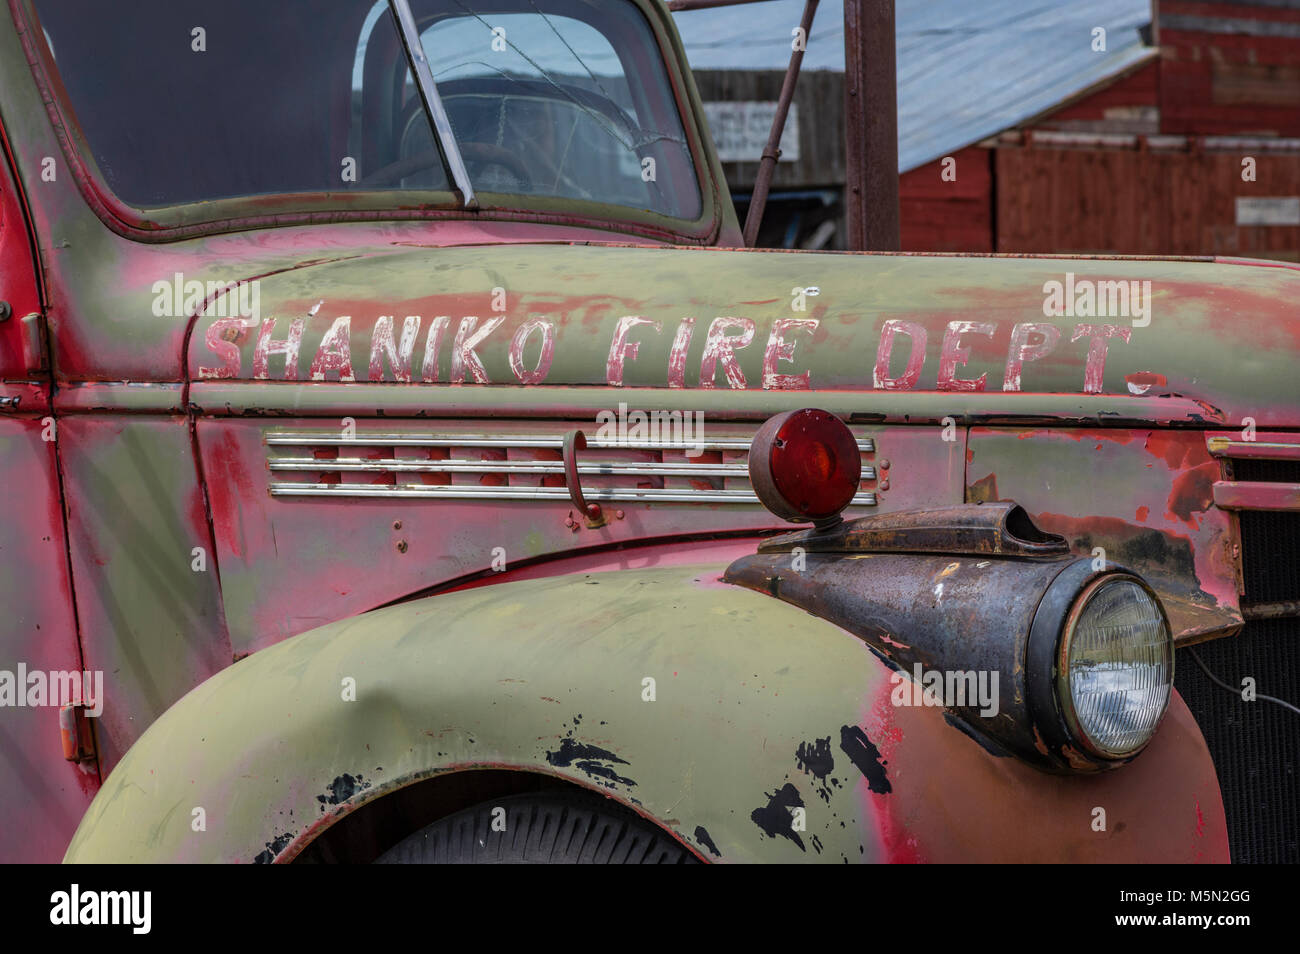 Das Löschfahrzeug aus Oregon Ghost Town, Shaniko. Befindet sich in der hohen Wüste von östlichen Oregon Shaniko ist heute fast ausgestorben. Stockfoto